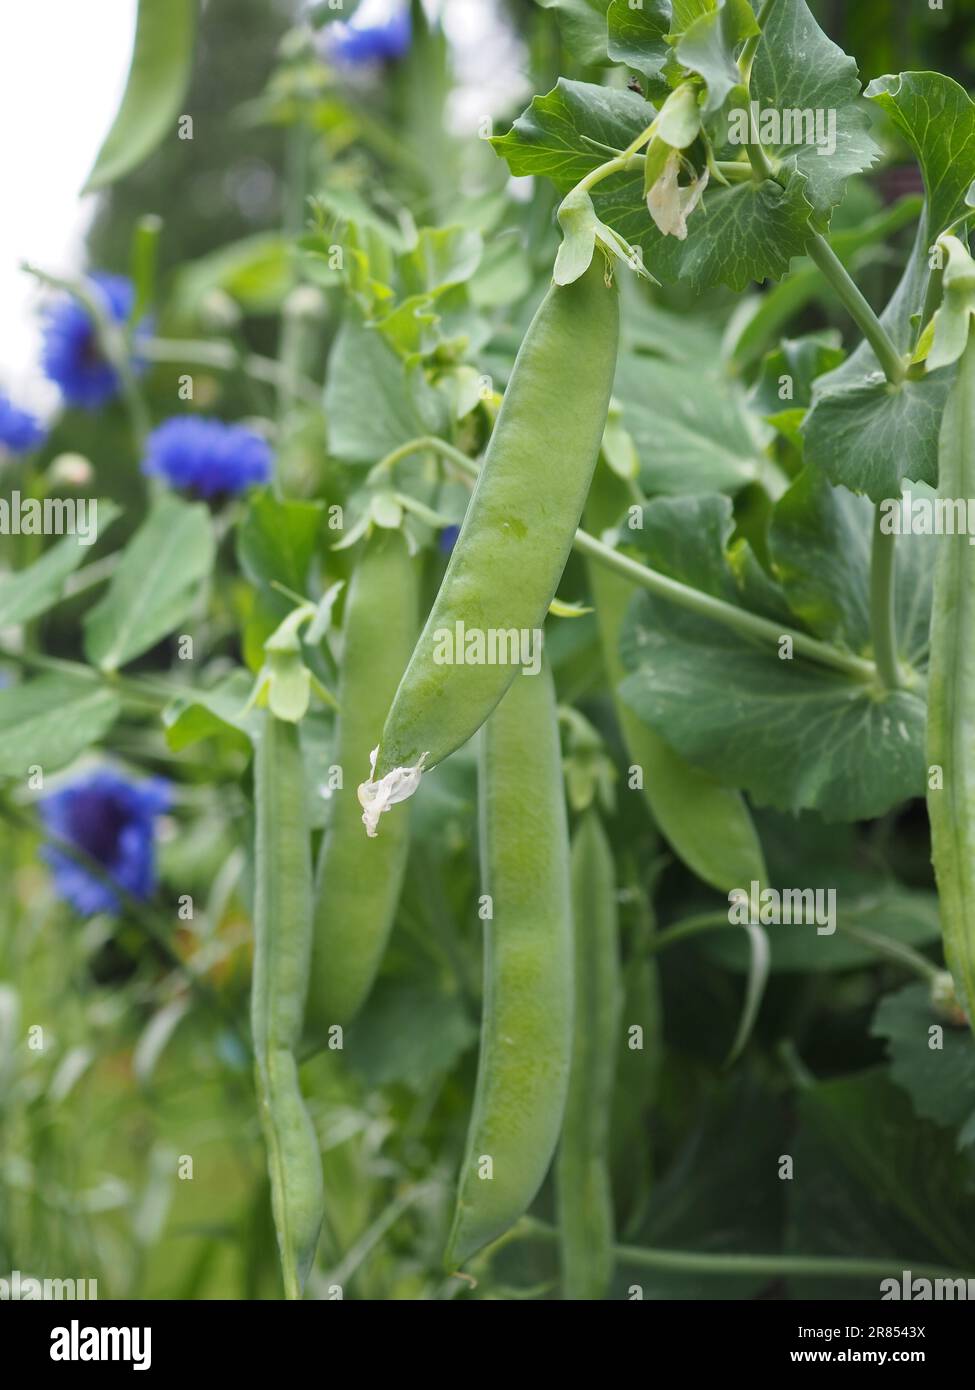 Primo piano dei baccelli di piselli che crescono su una pianta di piselli in un giardino in stile cottage, in un orto o in un orto in estate in Gran Bretagna Foto Stock